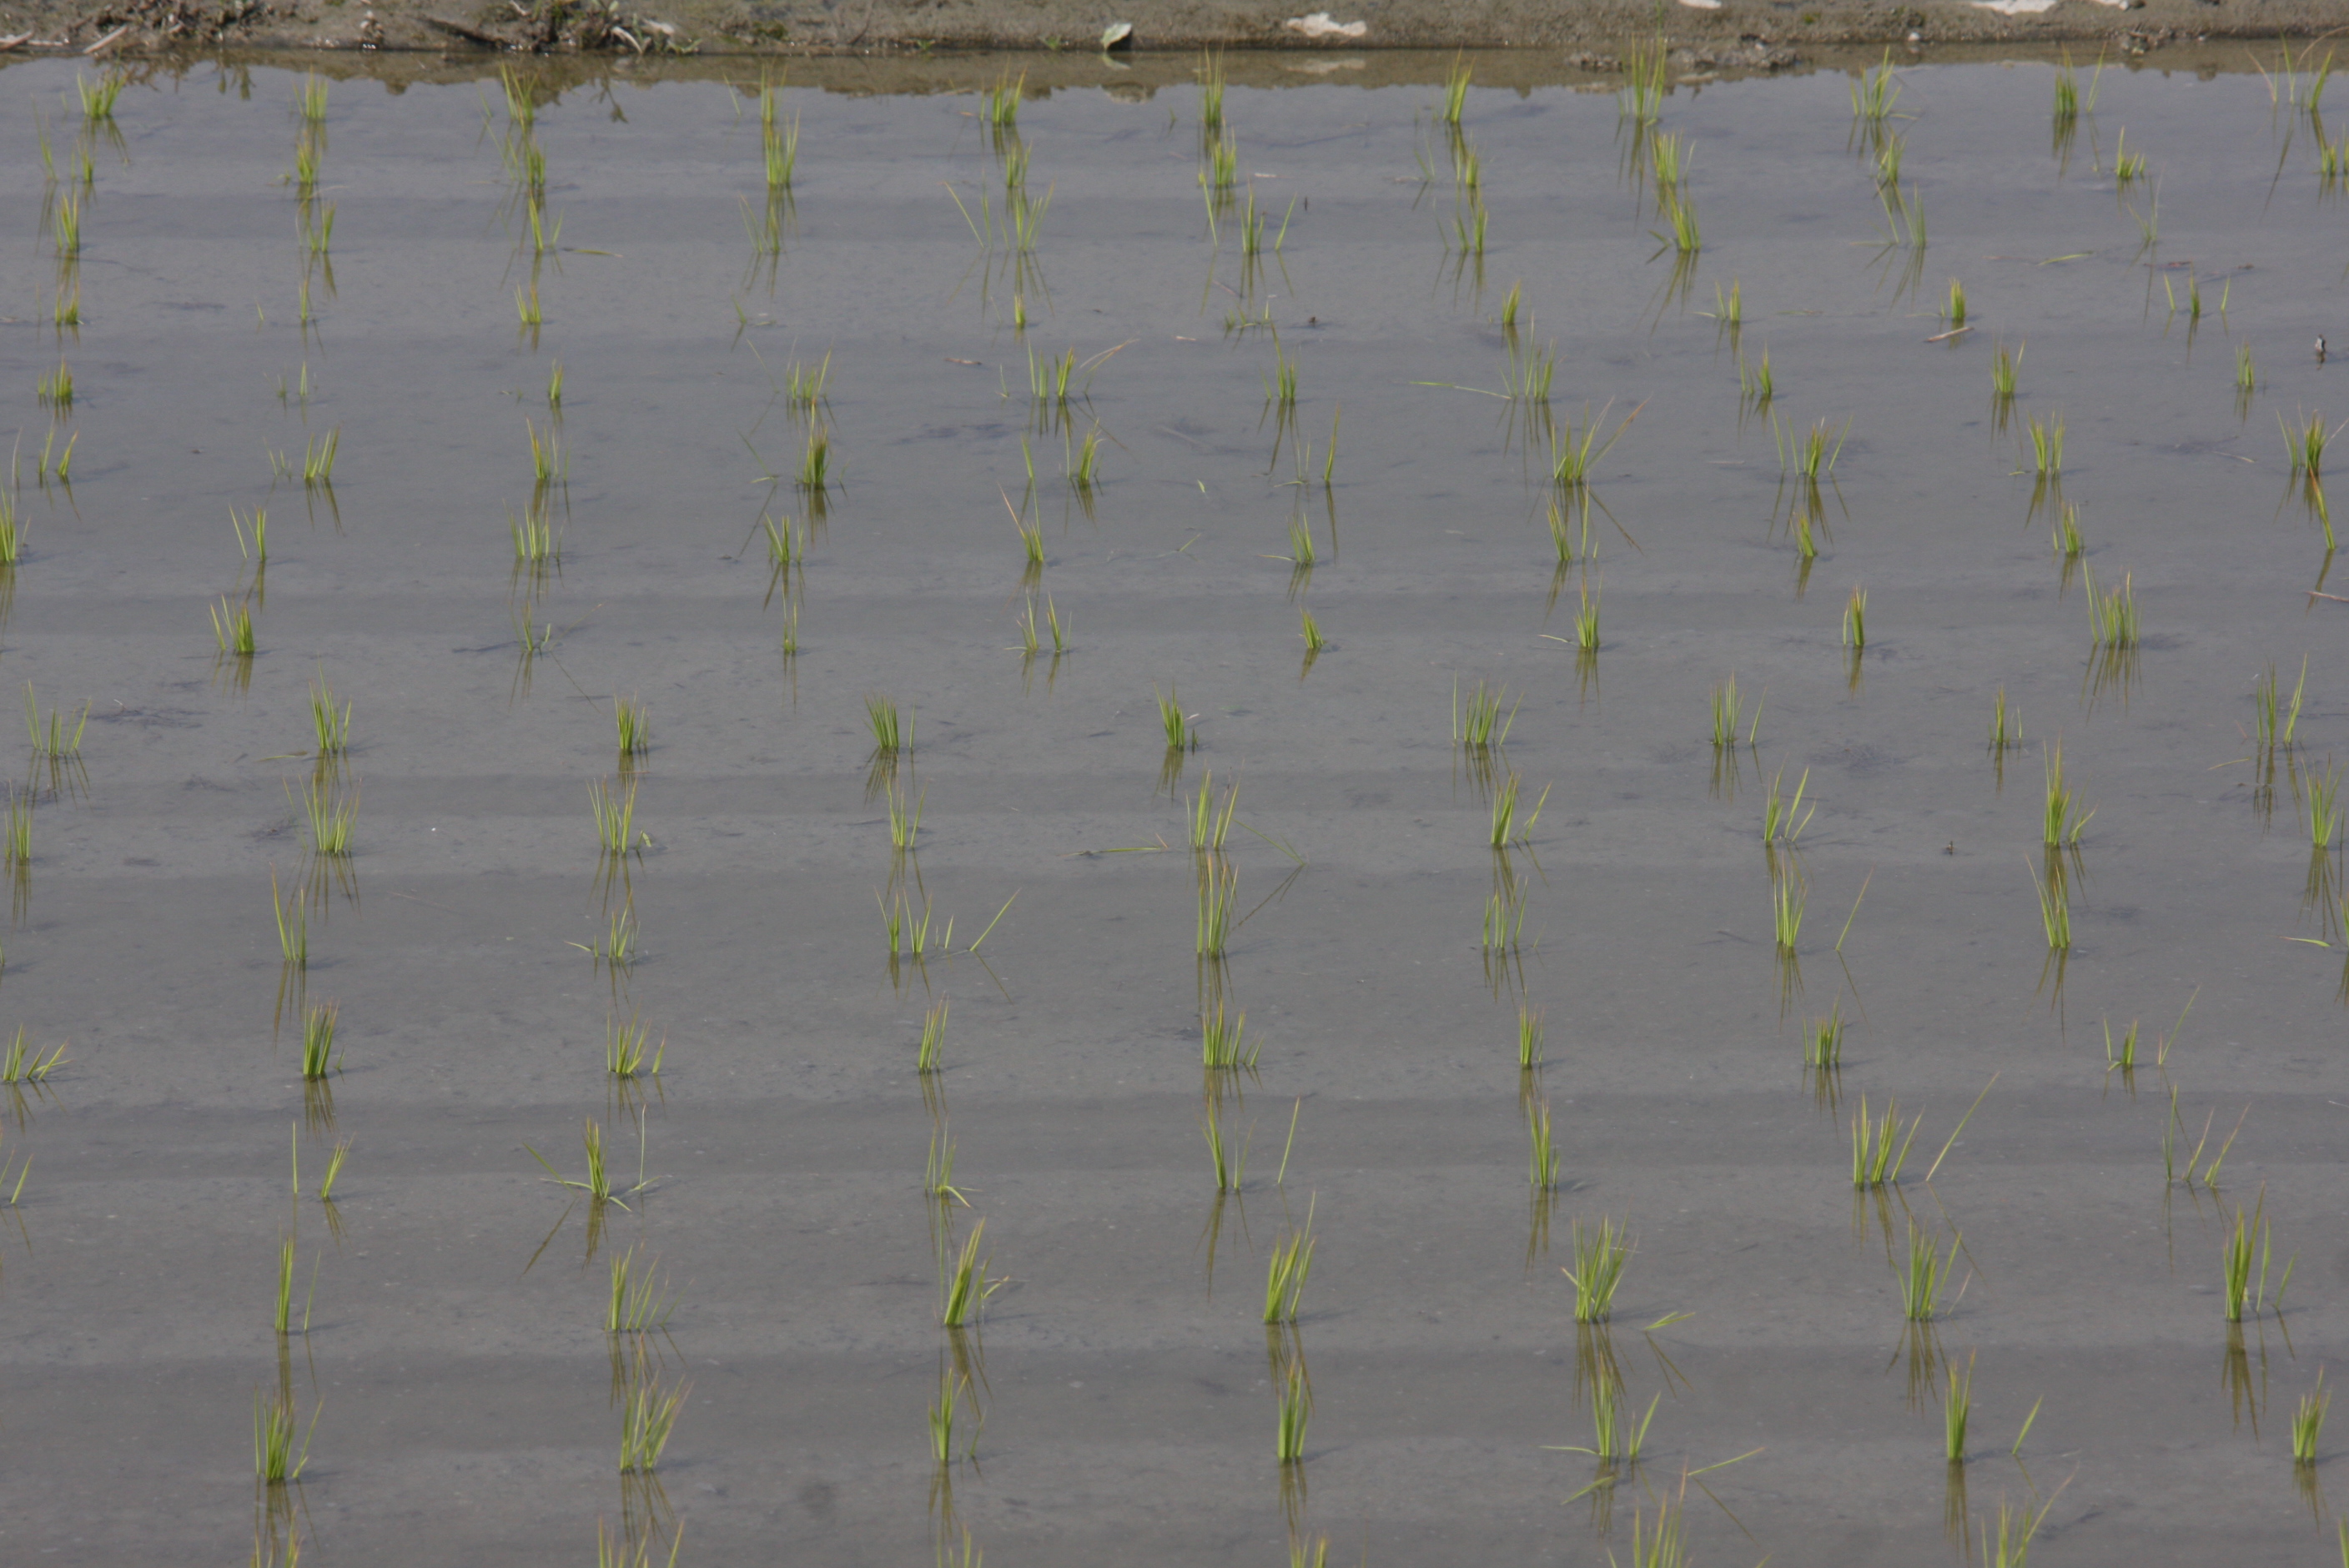 圖一、已插秧之二期稻作，應注意田間灌水深度，原則水深以秧苗高度為宜。